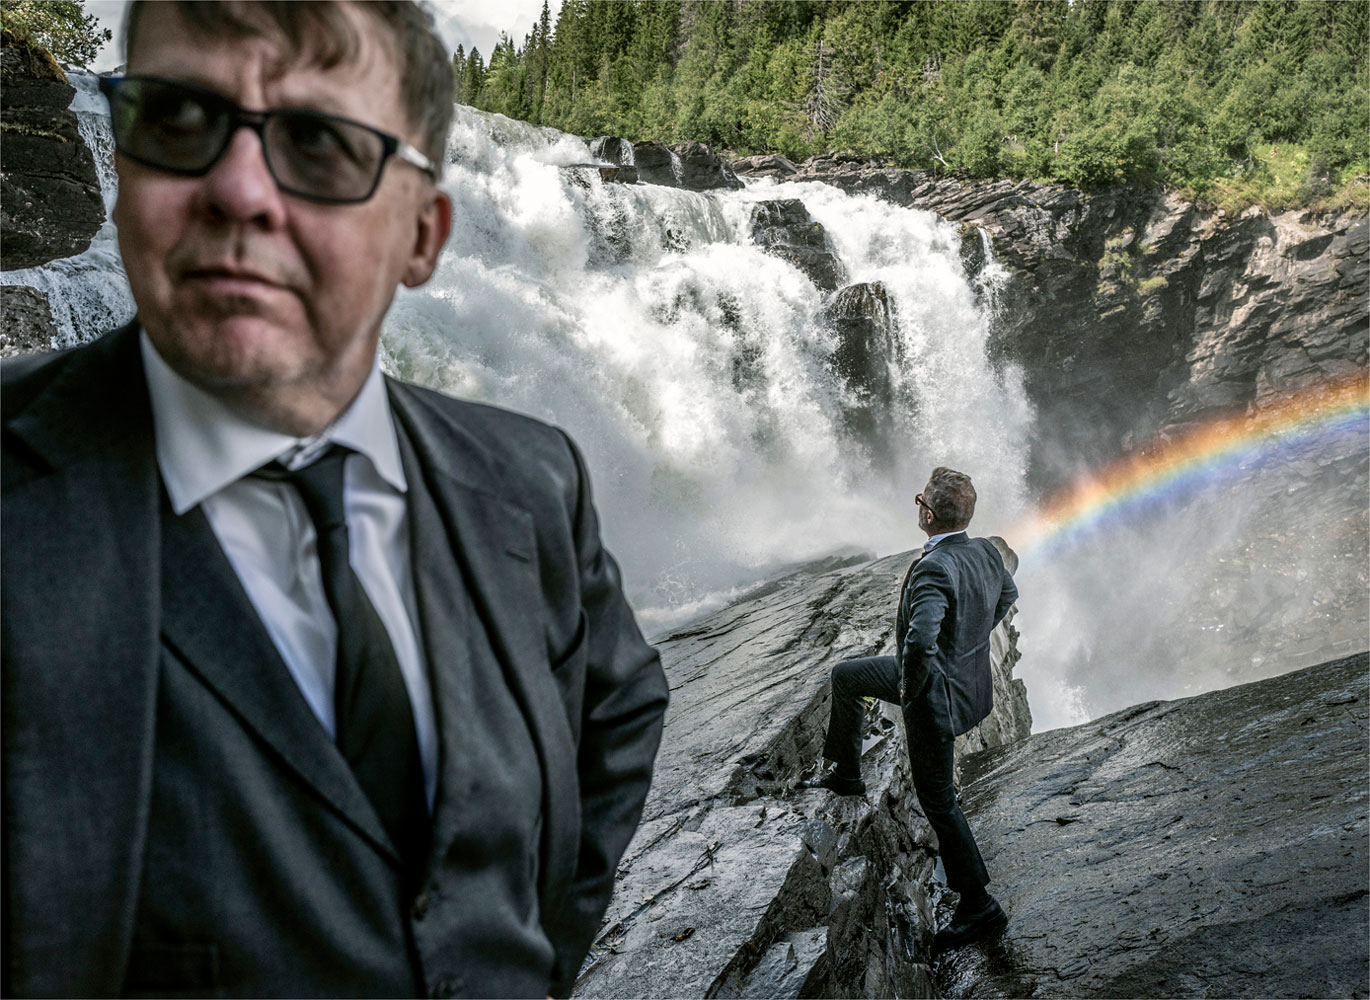 Foto. En kostymklädd man i halvfigur syns till vänster. Han har solglasögon och tittar snett utanför bild. Till höger bakom honom står en till kostymklädd man på en klippa. I bakgrunden syns ett mäktigt vattenfall. En regnbåge syns vid vattenfallet. 